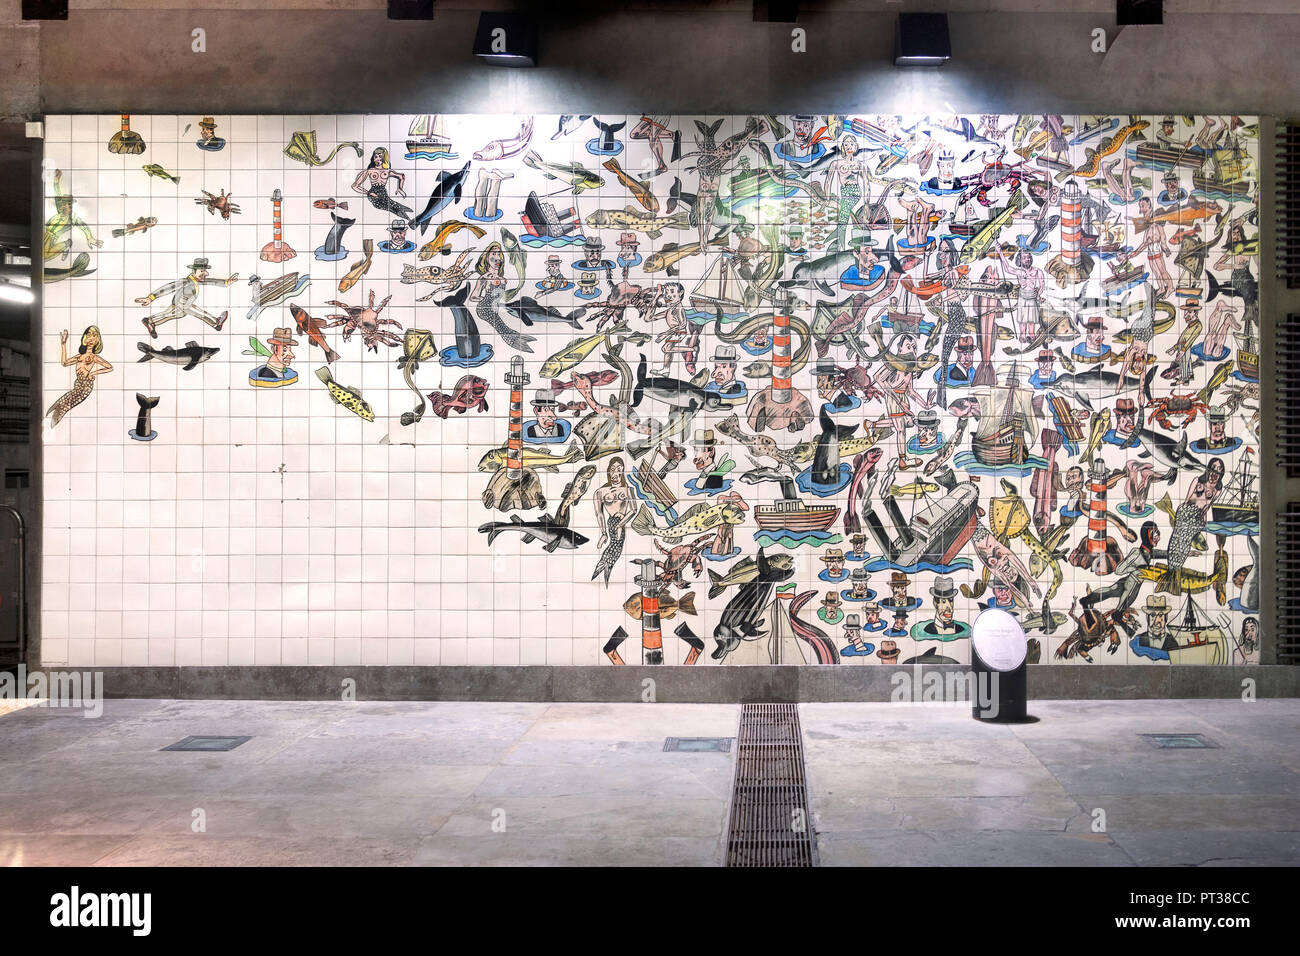 Portugal, Lissabon, Estação do Oriente, künstlerisch gestalteten Wandfliese Bilder in der U-Bahn Stockfoto